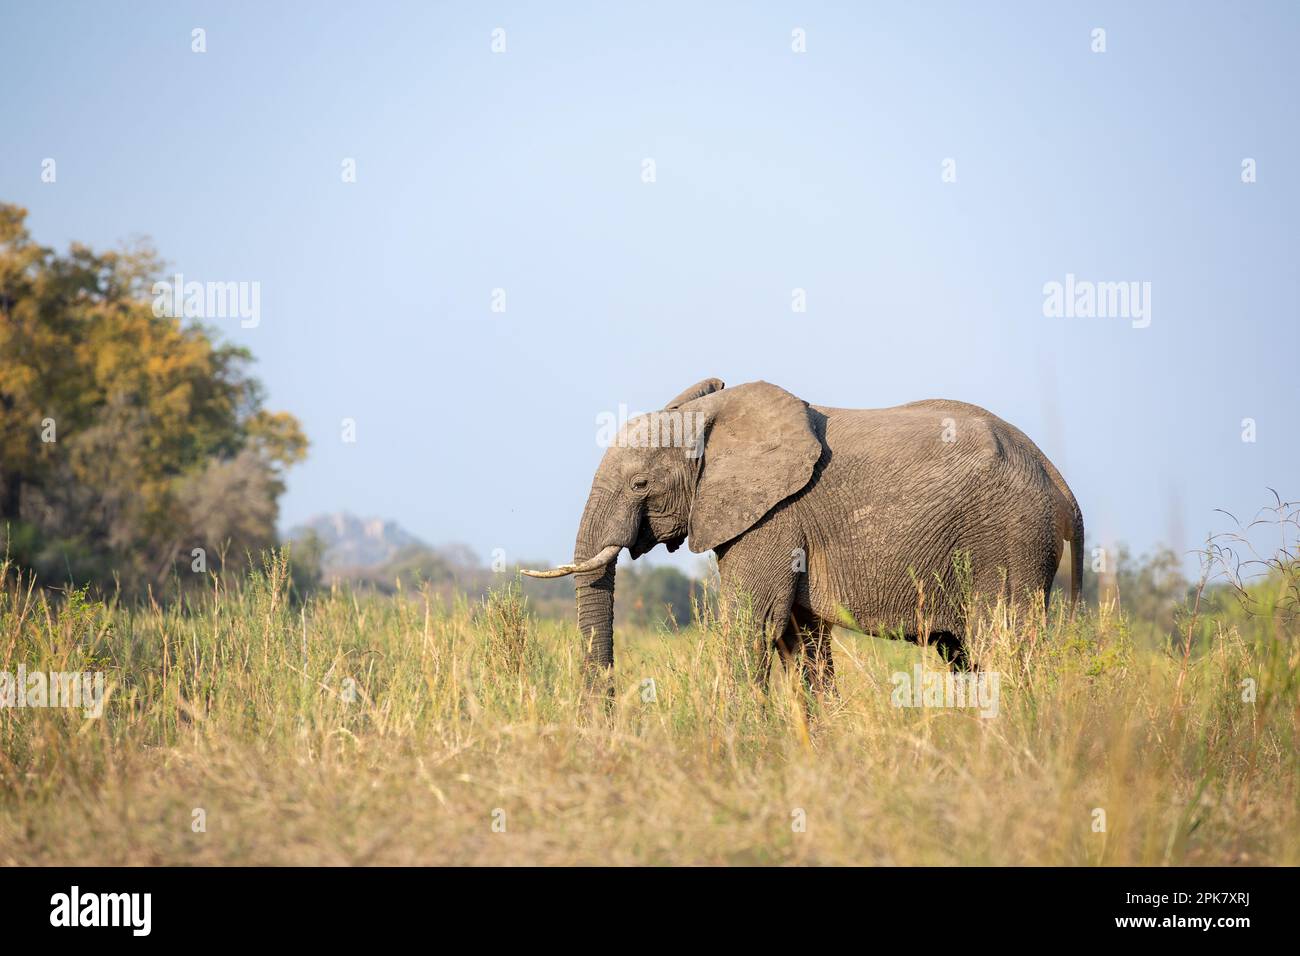 Ein Elefant, Loxodonta africana, läuft durch langes Gras, in Schwarz und Weiß. Stockfoto